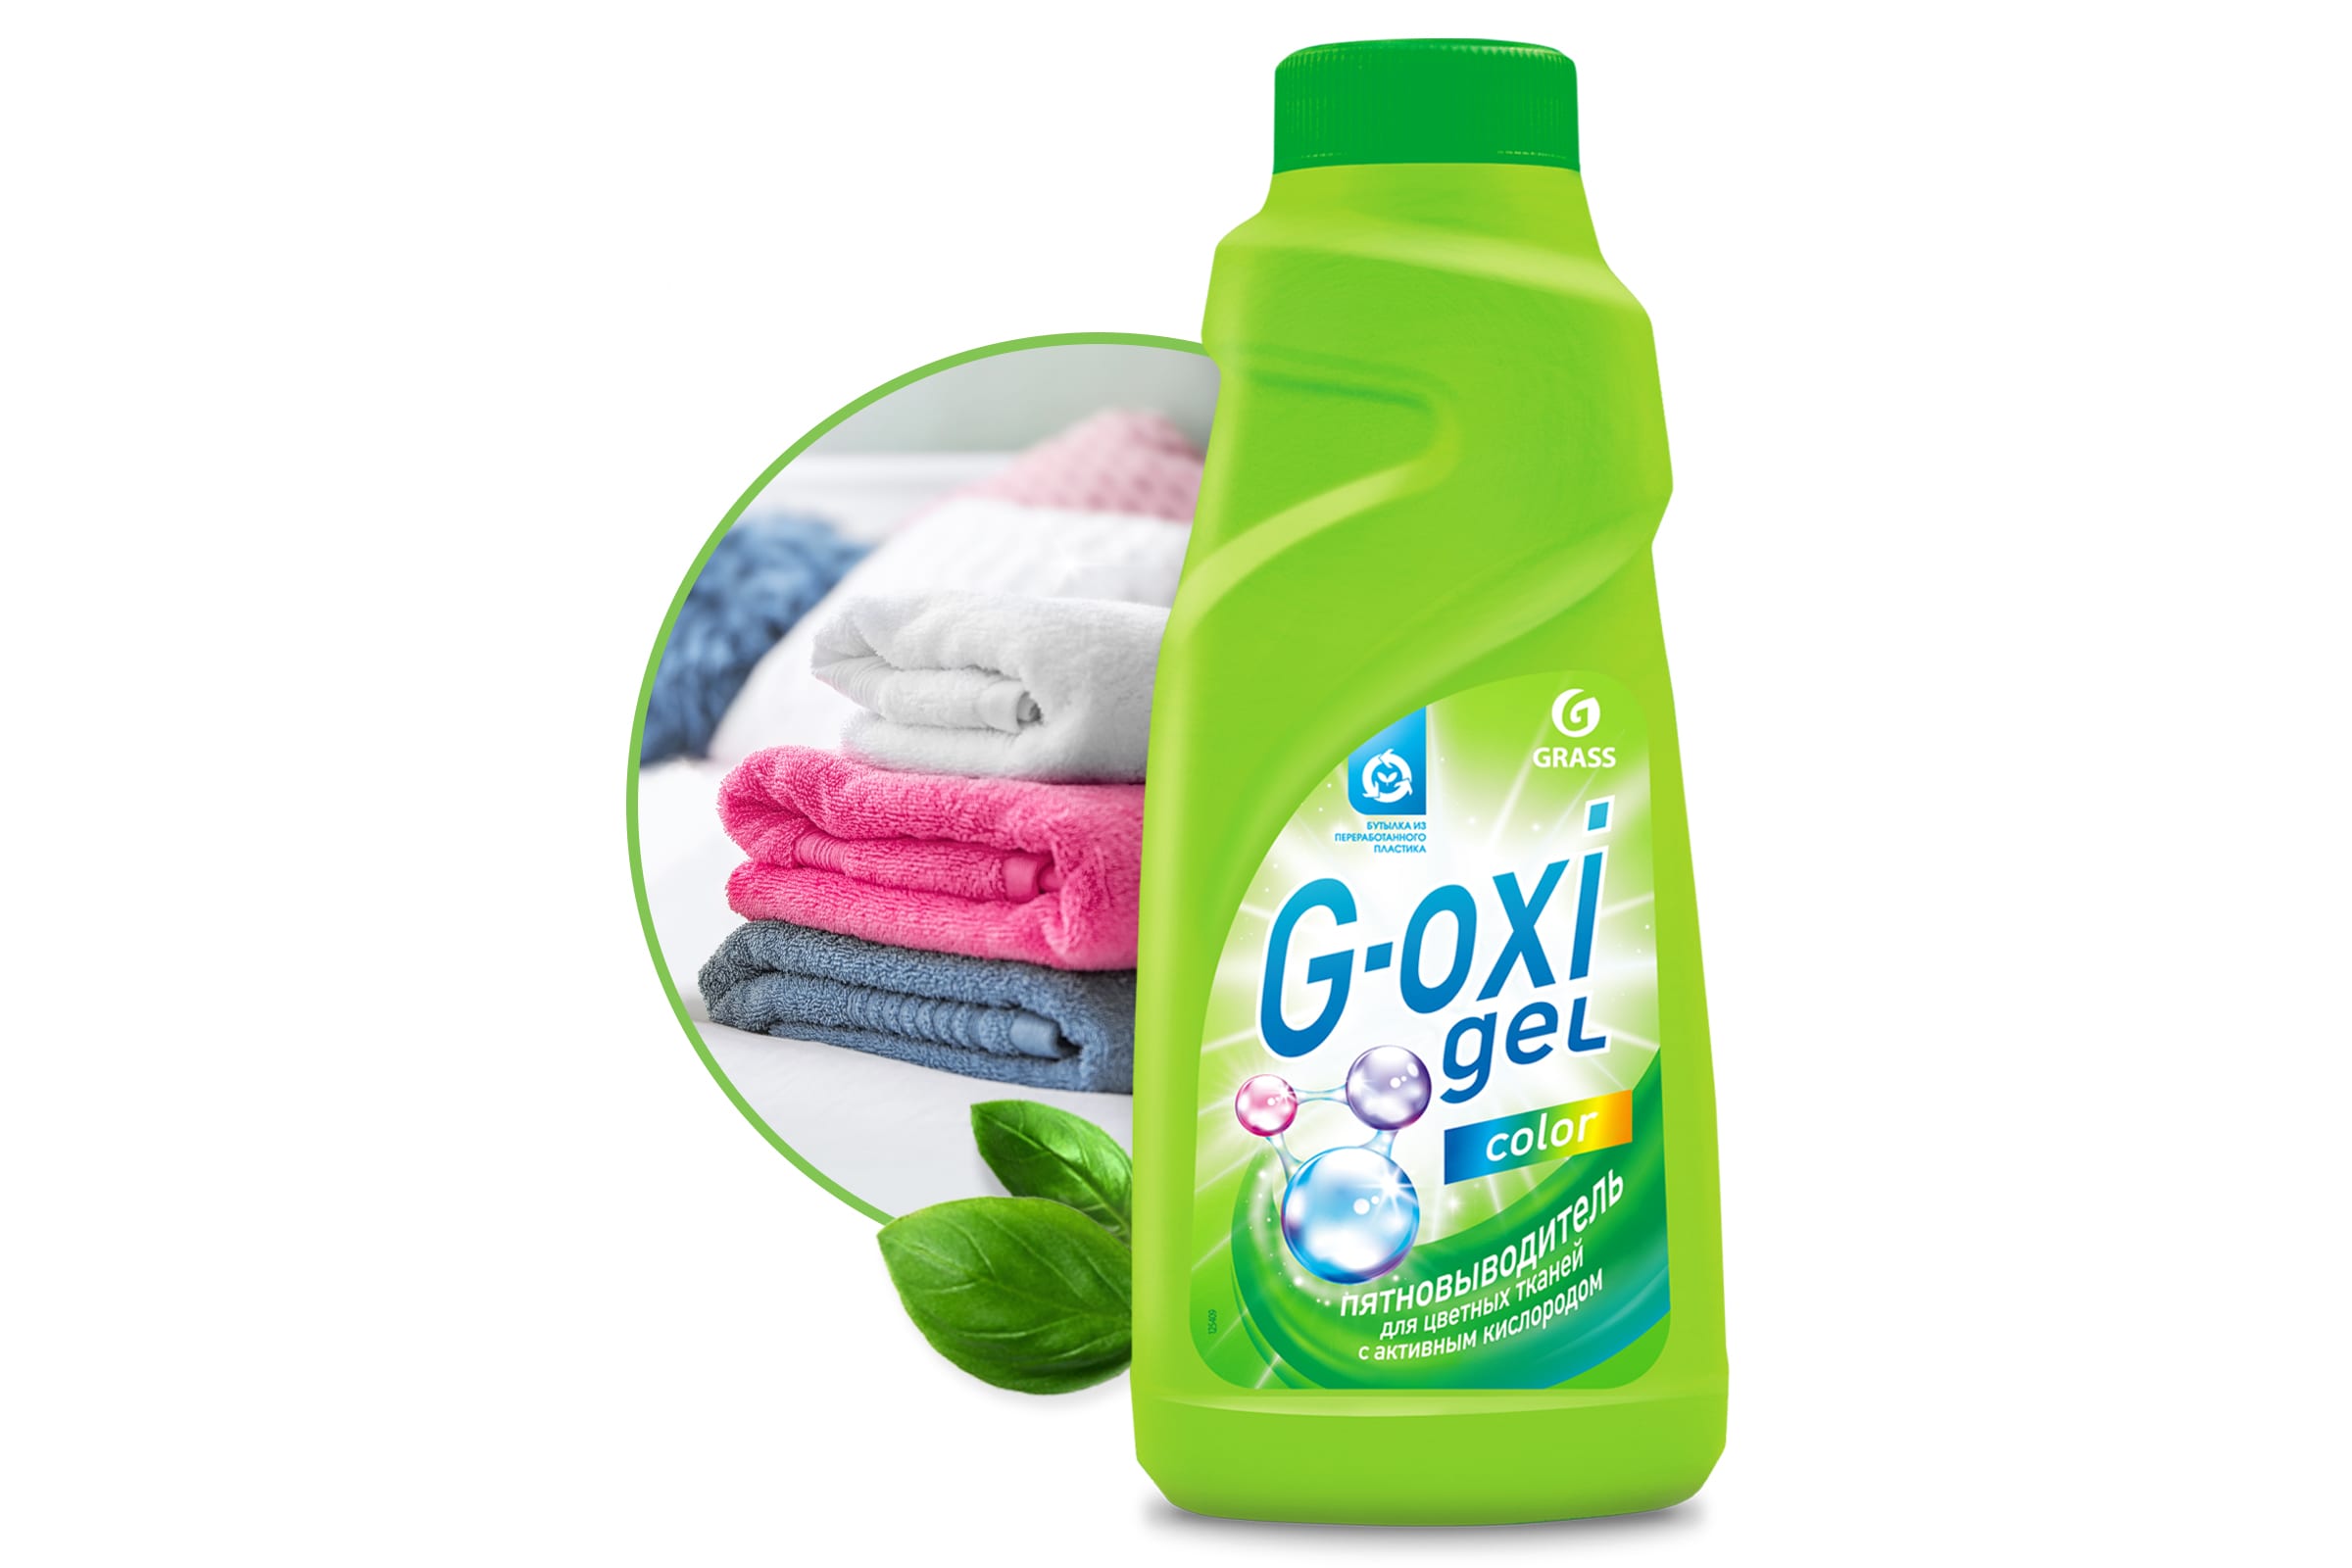 Пятновыводитель Grass G-oxi gel color 500 мл.